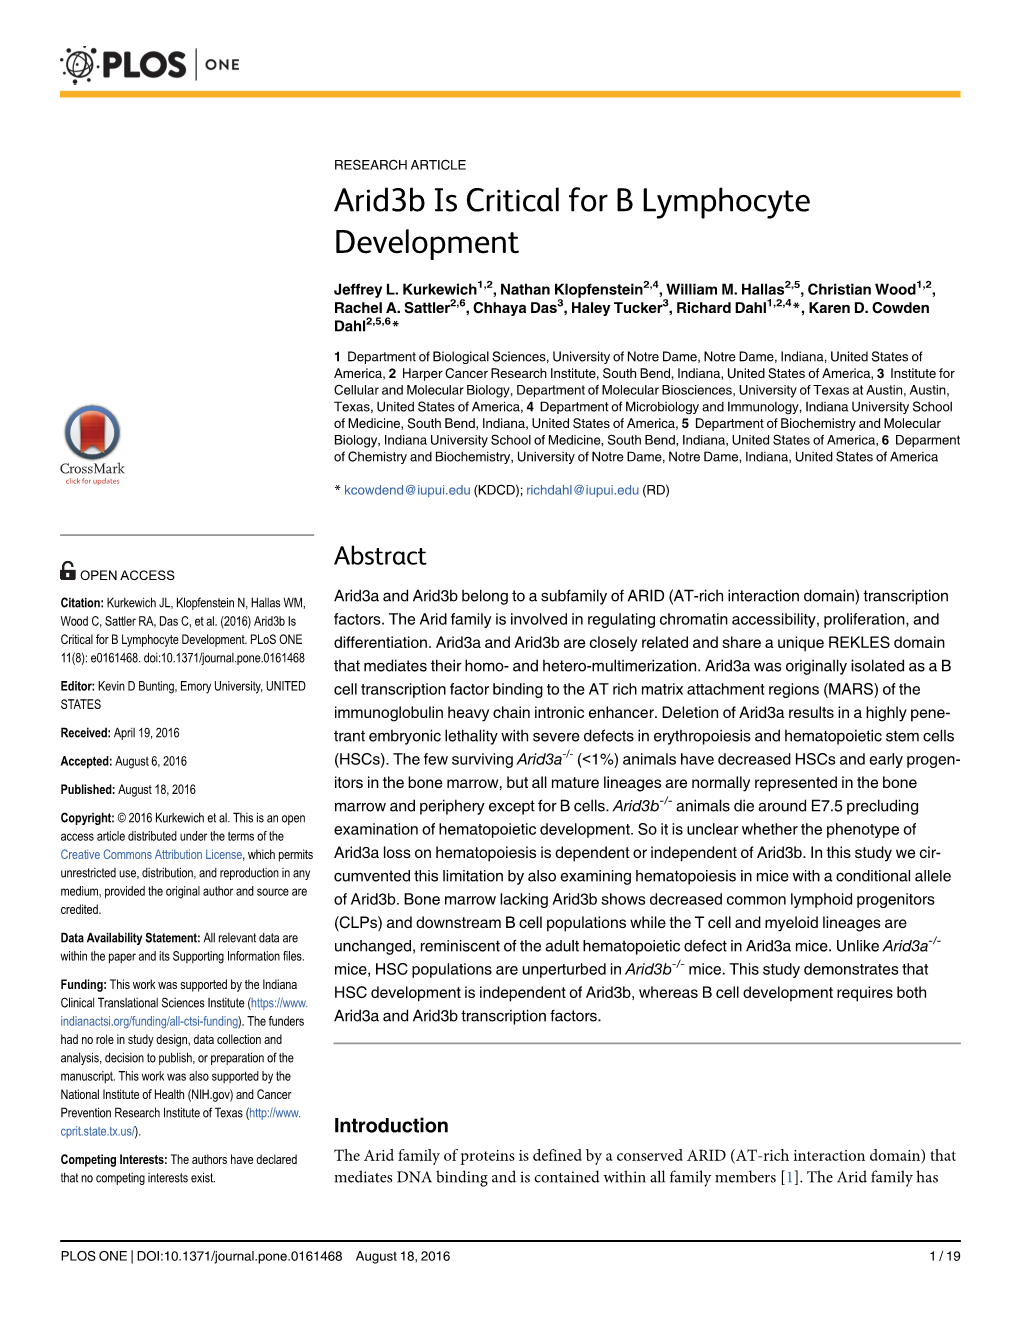 Arid3b Is Critical for B Lymphocyte Development